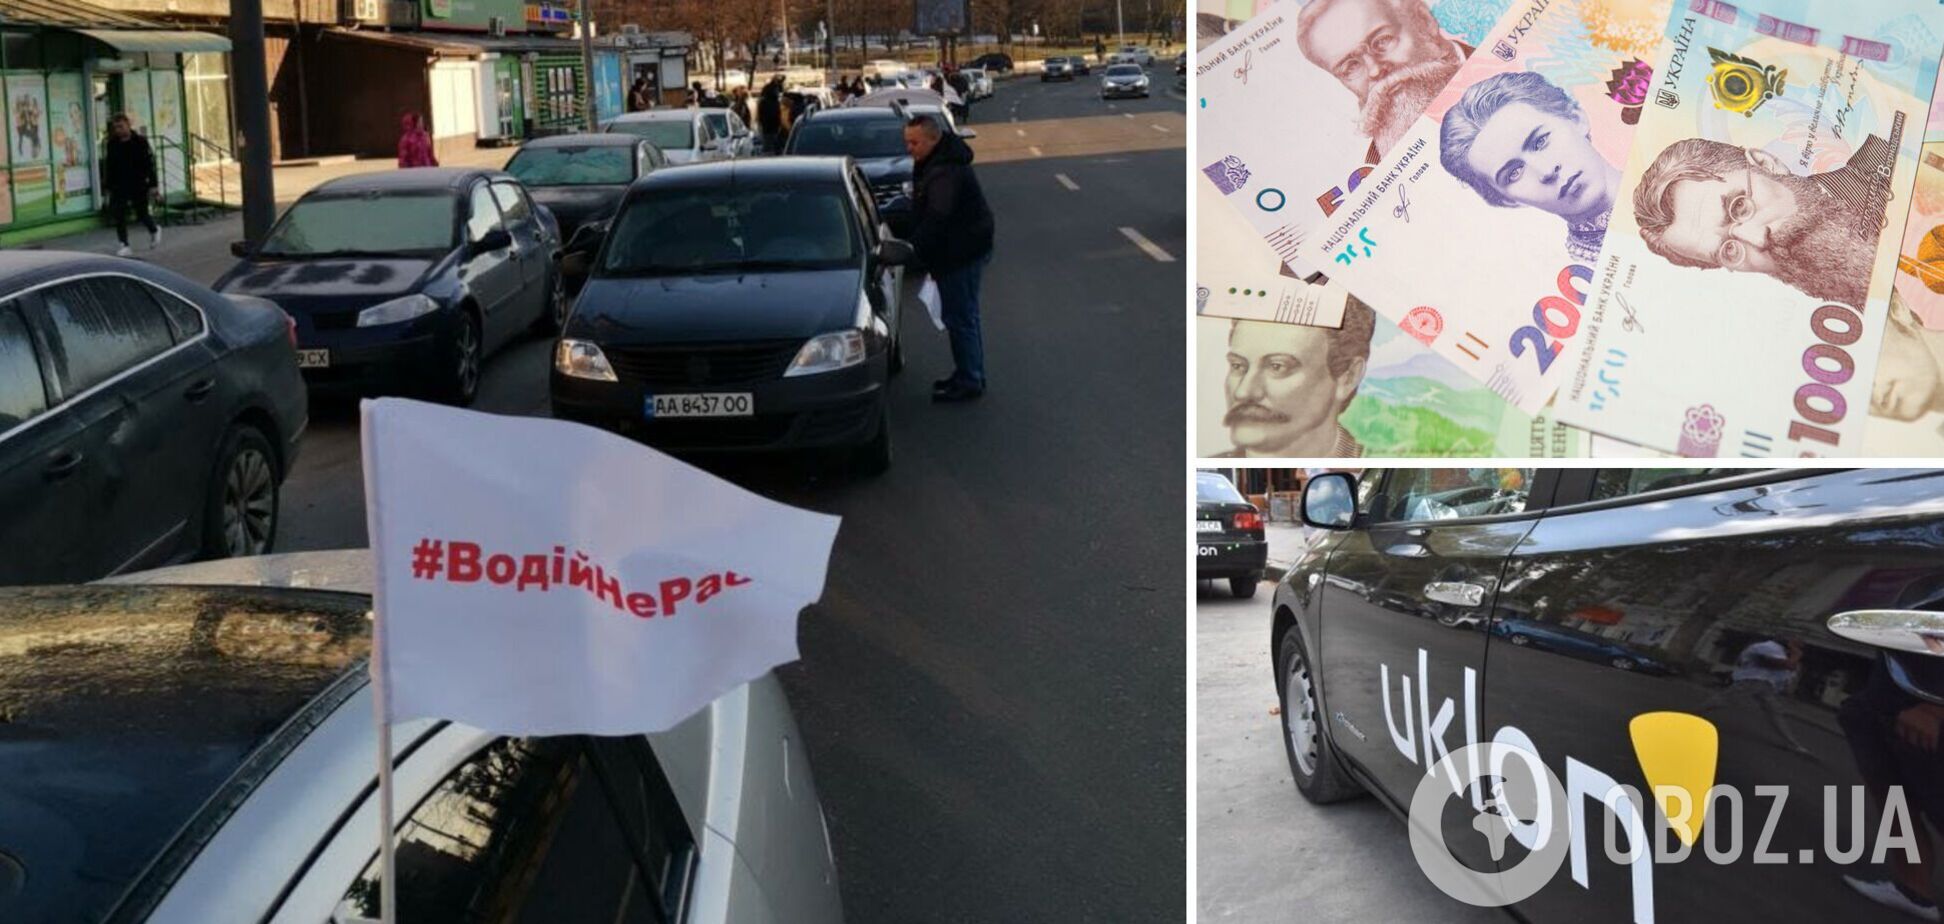 Украинские таксисты устроили страйк